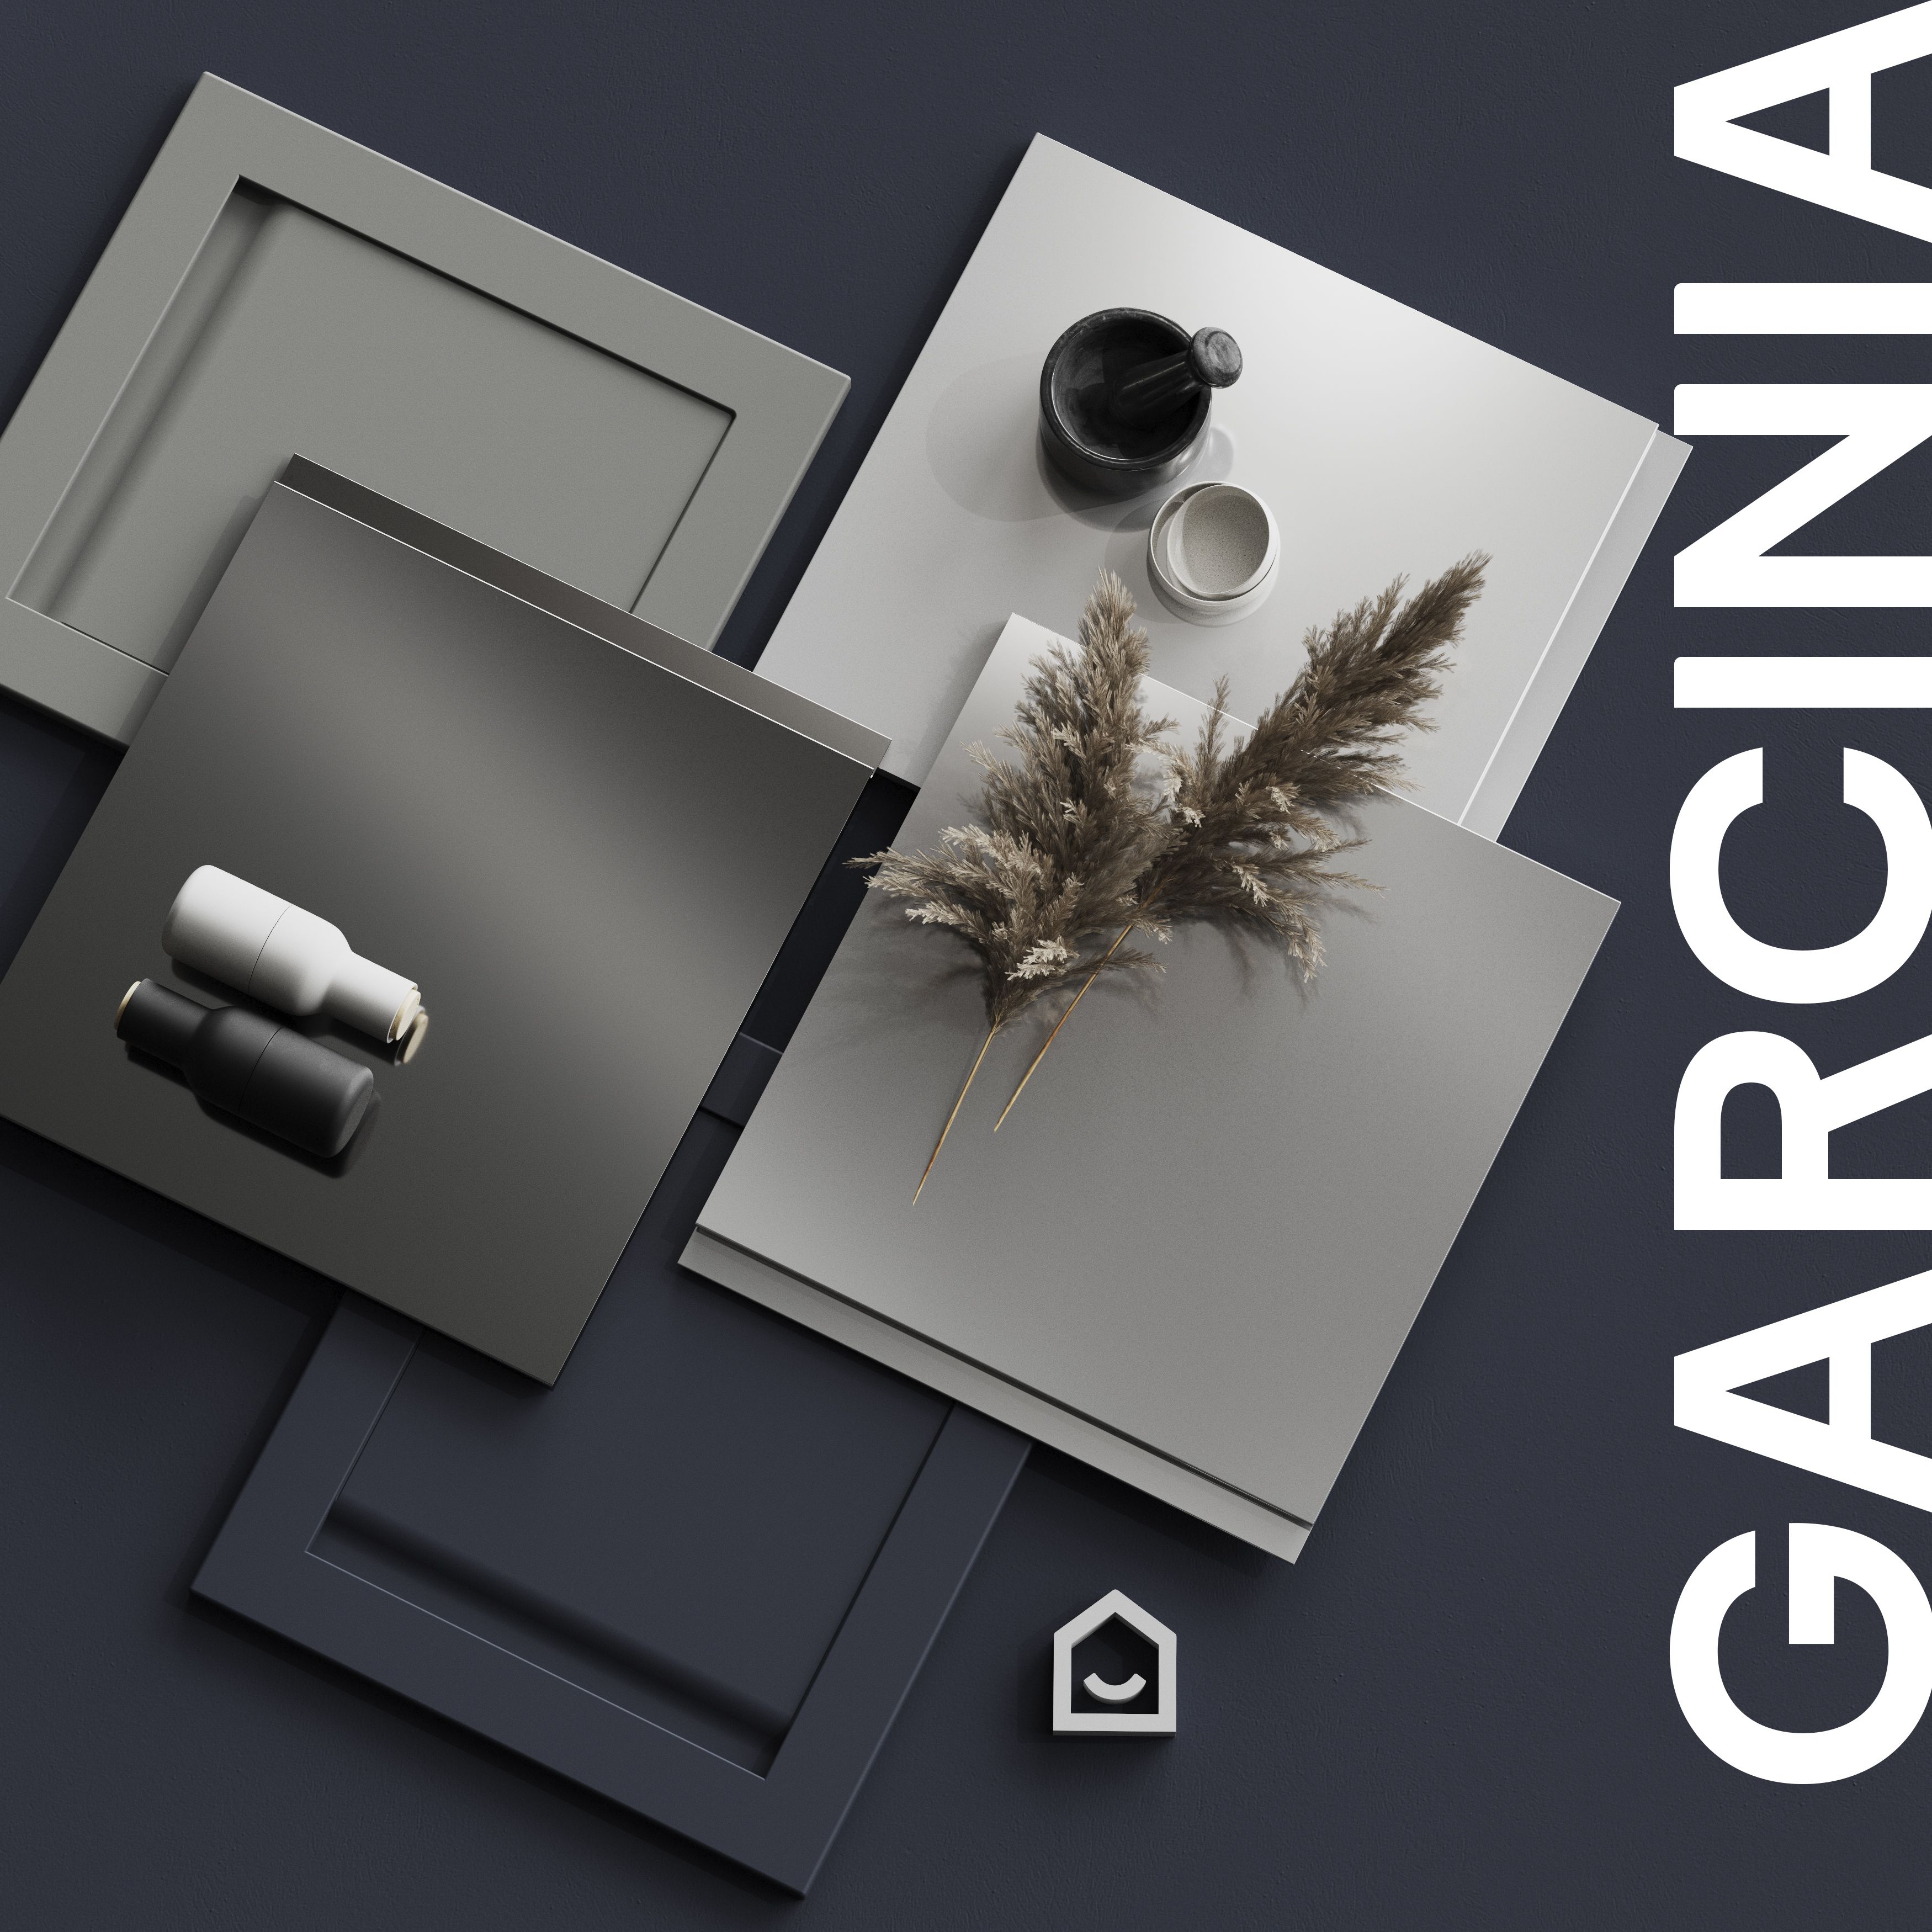 GoodHome Garcinia Gloss light grey Drawer front, bridging door & bi fold door, (W)1000mm (H)356mm (T)19mm